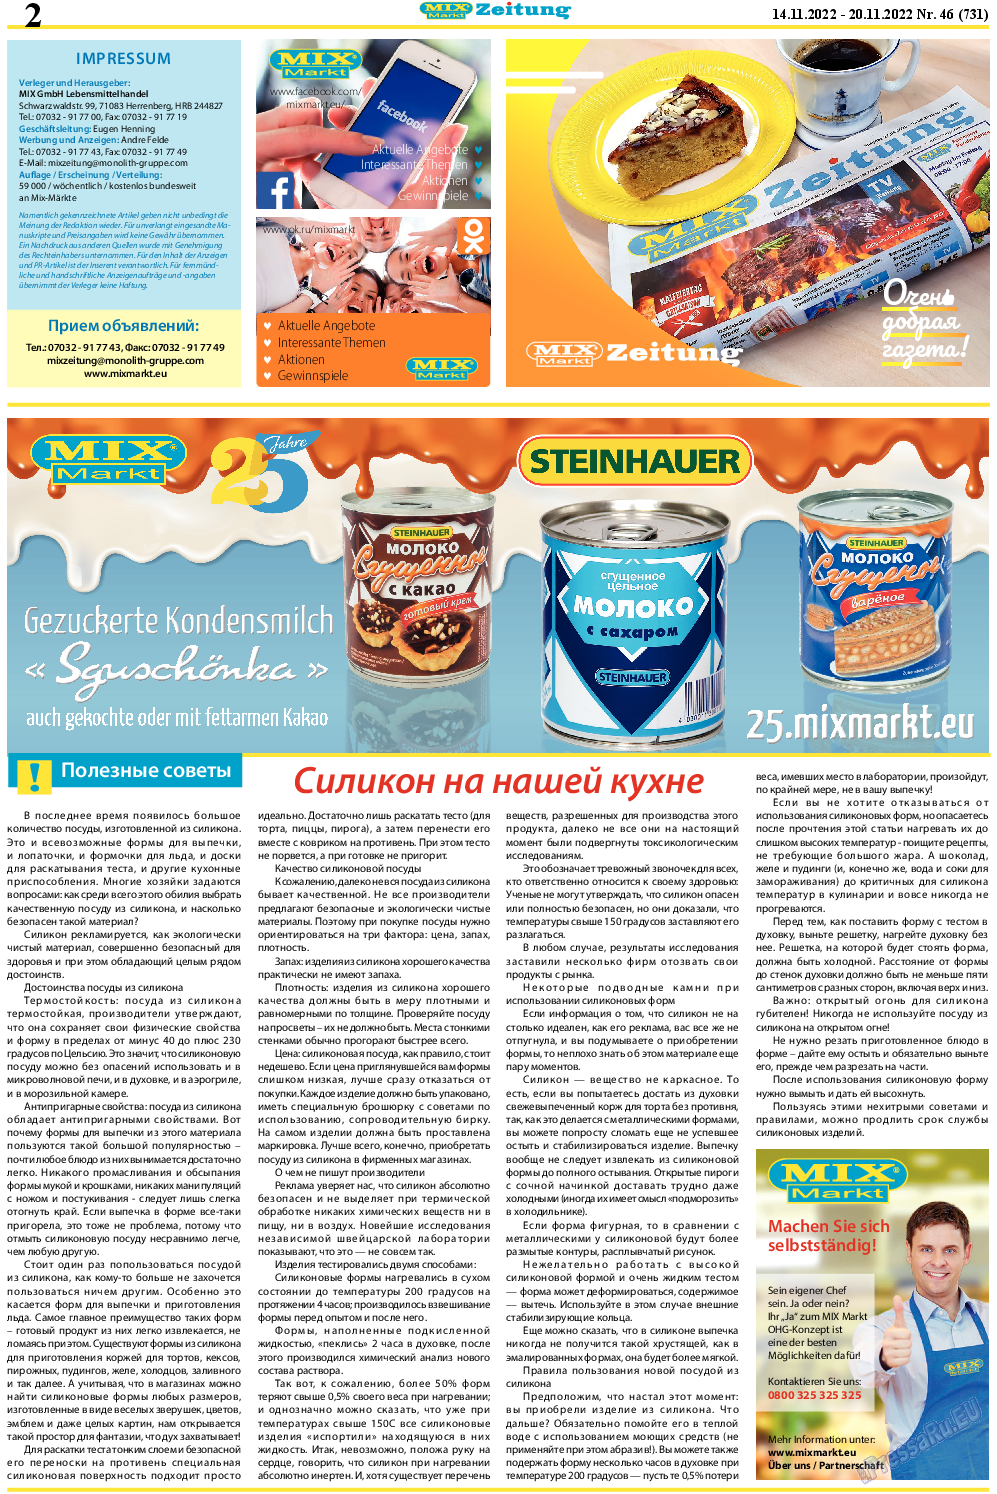 MIX-Markt Zeitung, газета. 2022 №46 стр.2